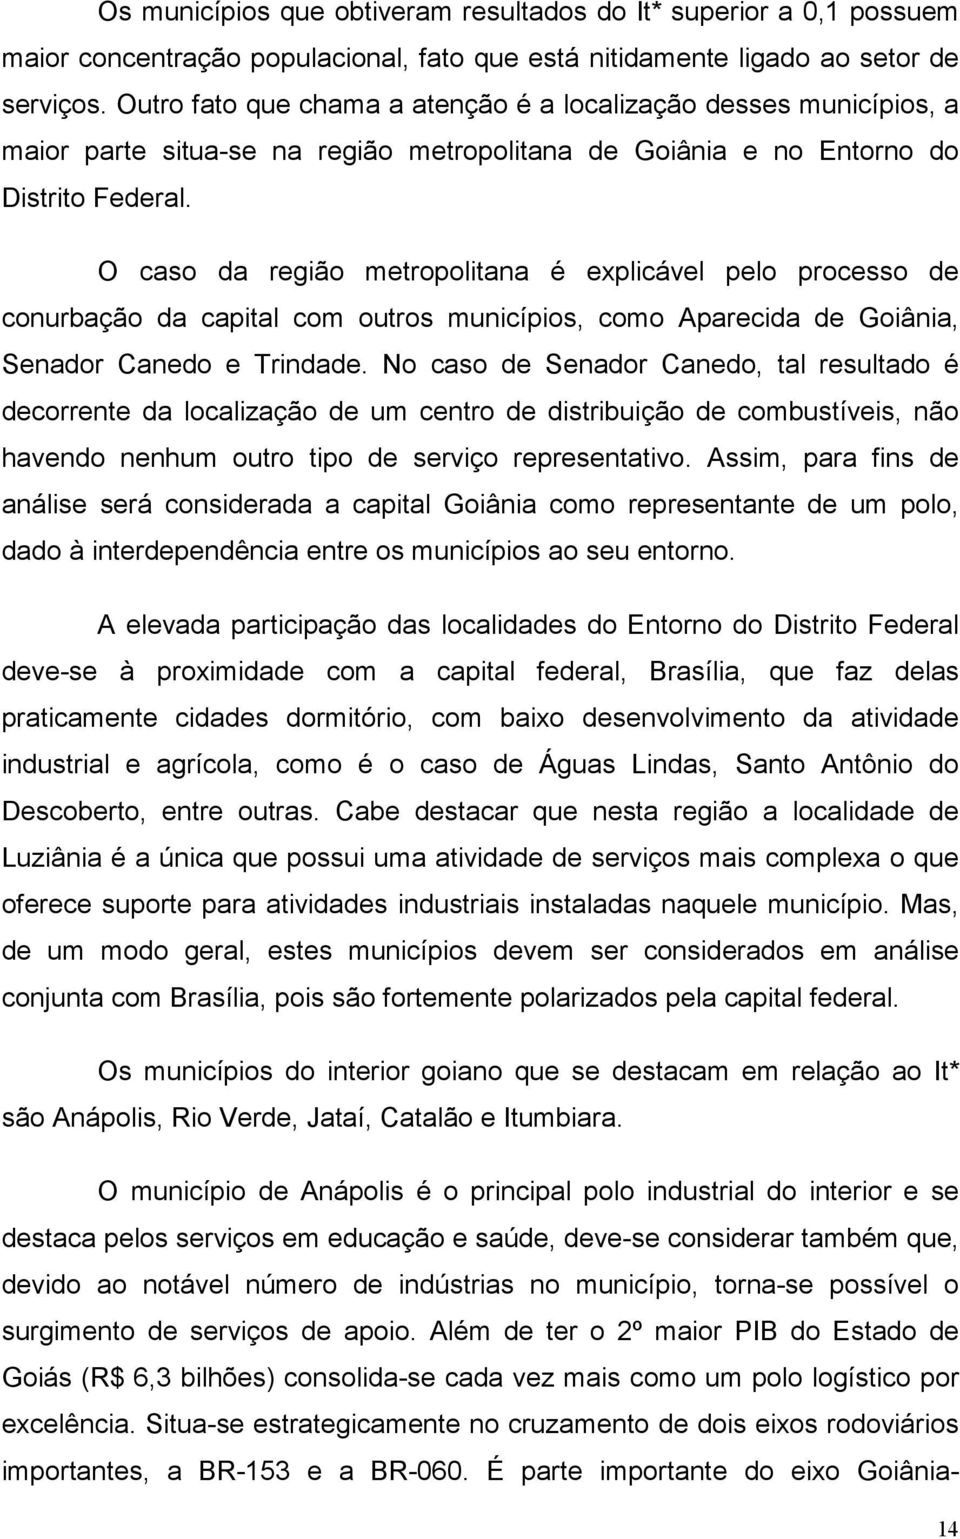 O caso da região metropolitana é explicável pelo processo de conurbação da capital com outros municípios, como Aparecida de Goiânia, Senador Canedo e Trindade.